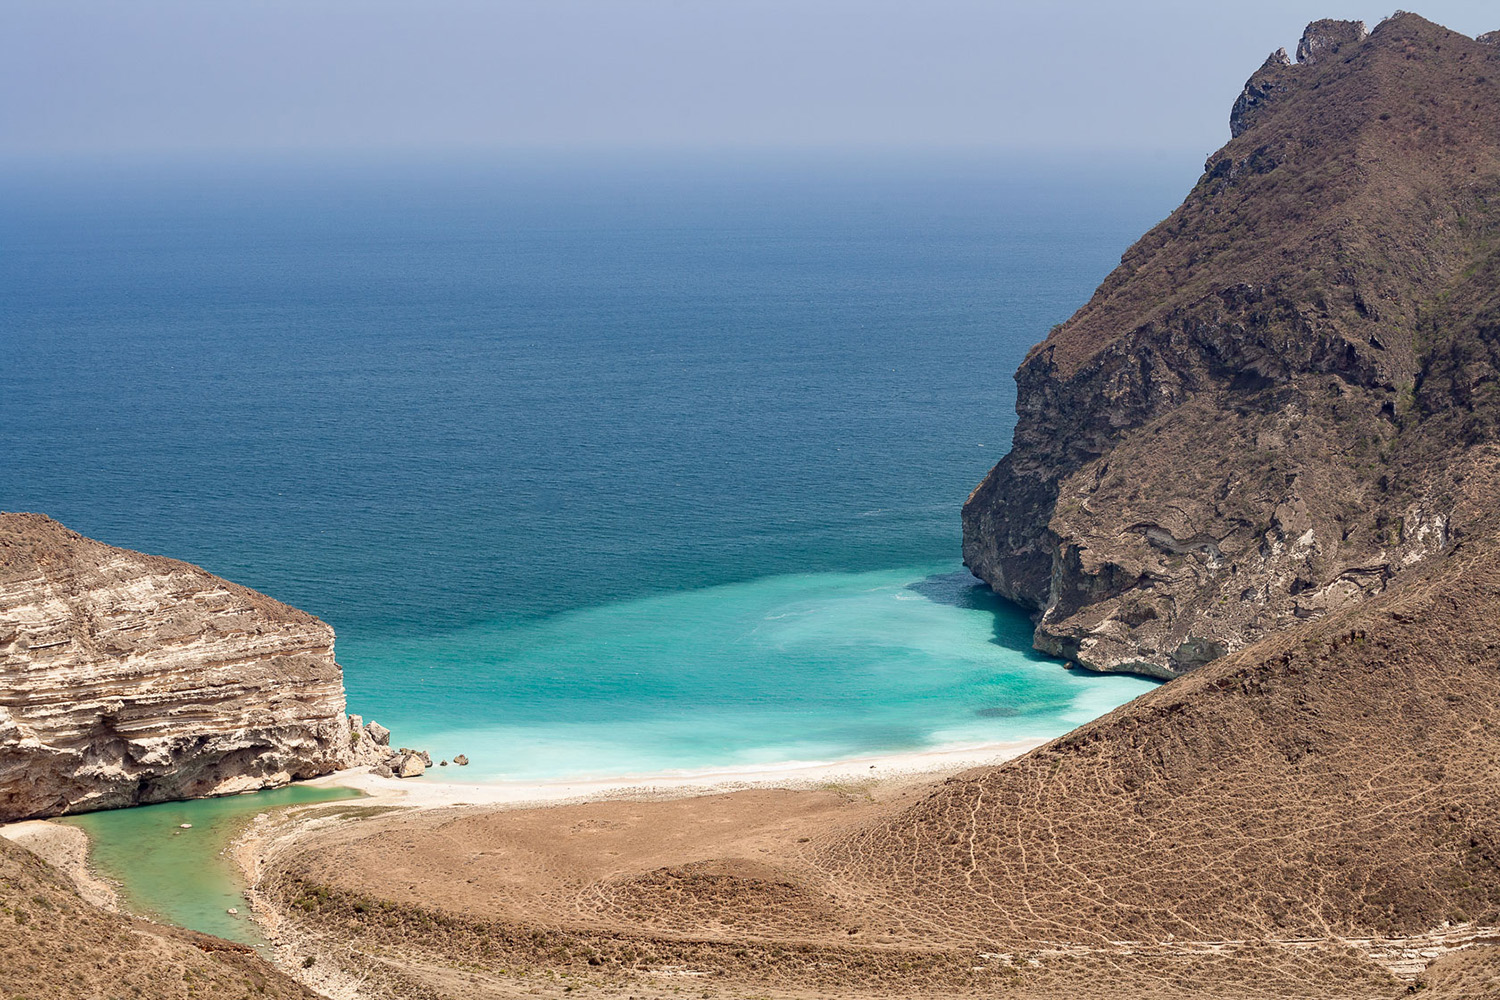 Plage déserte du Dhofar, pendant un voyage photo à Oman